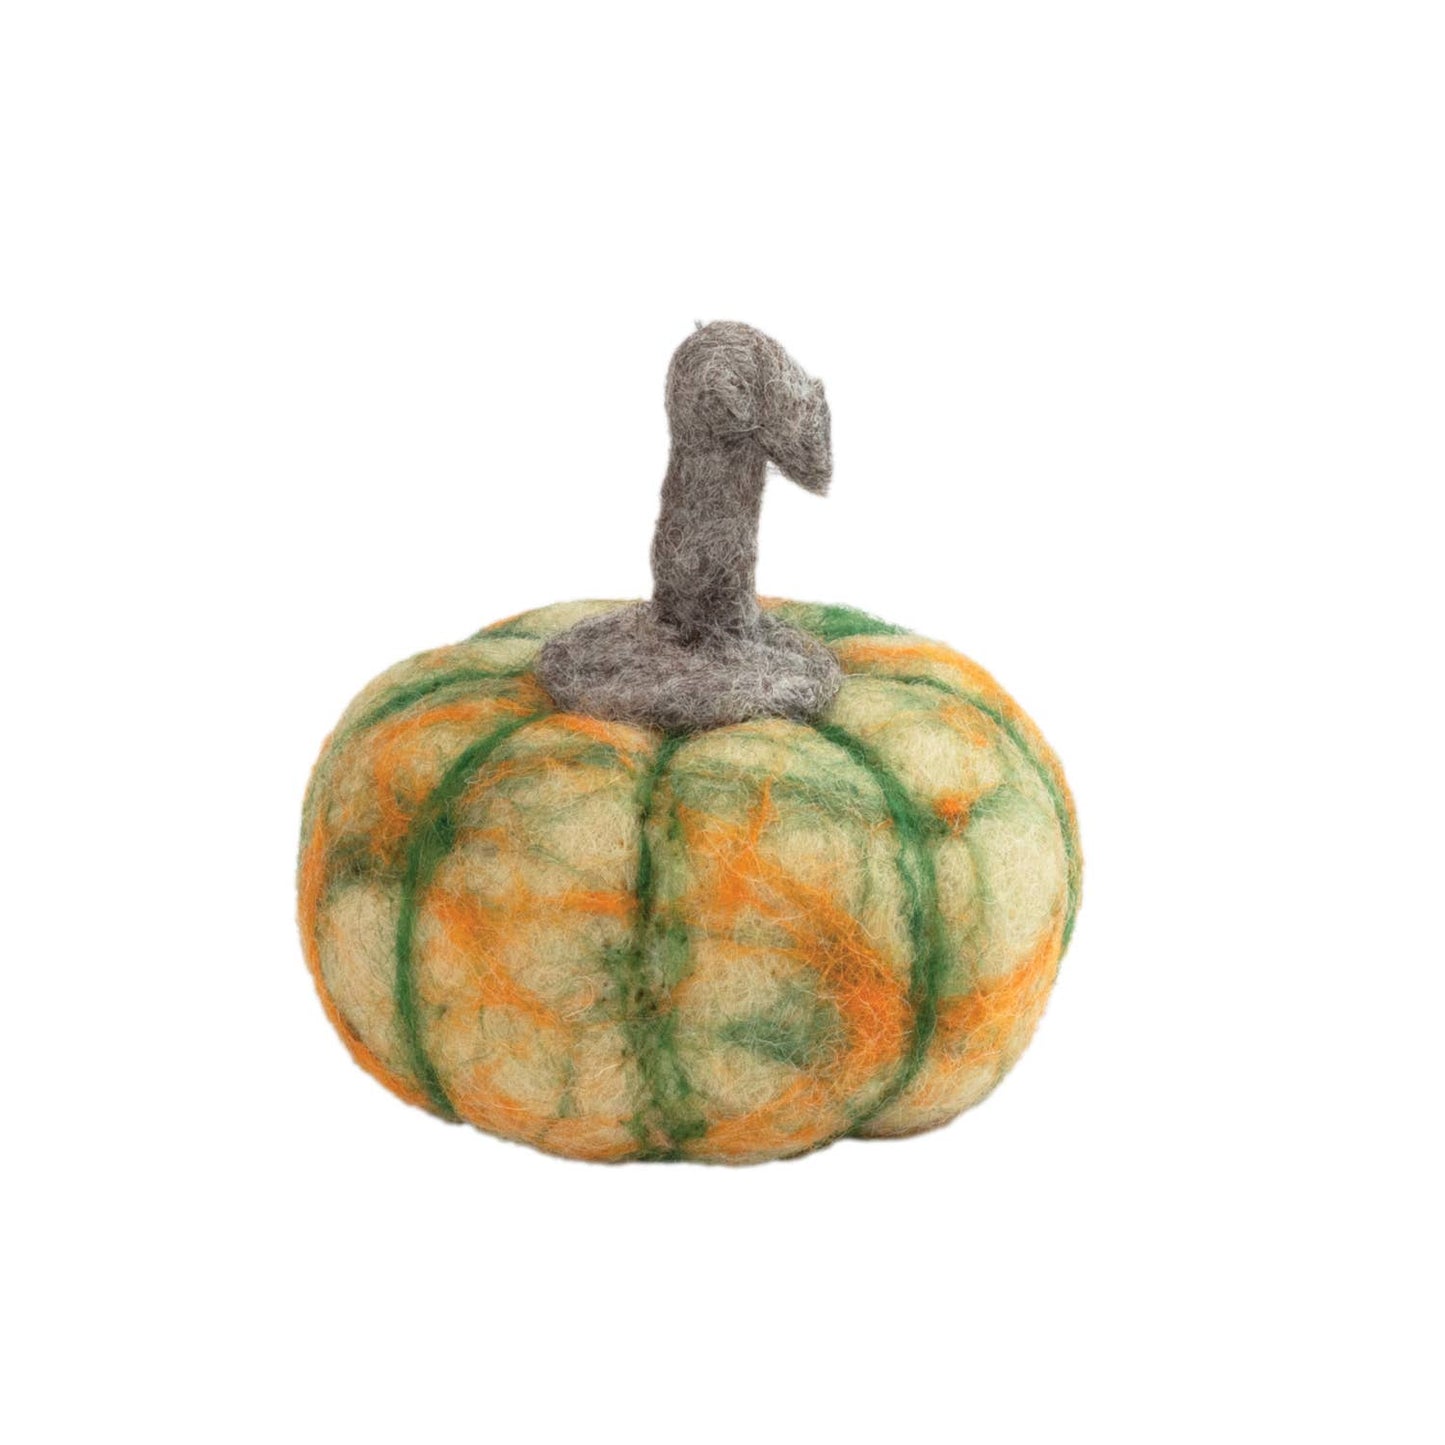 dZi Handmade - Cushaw Pumpkin, 3.5"dia.